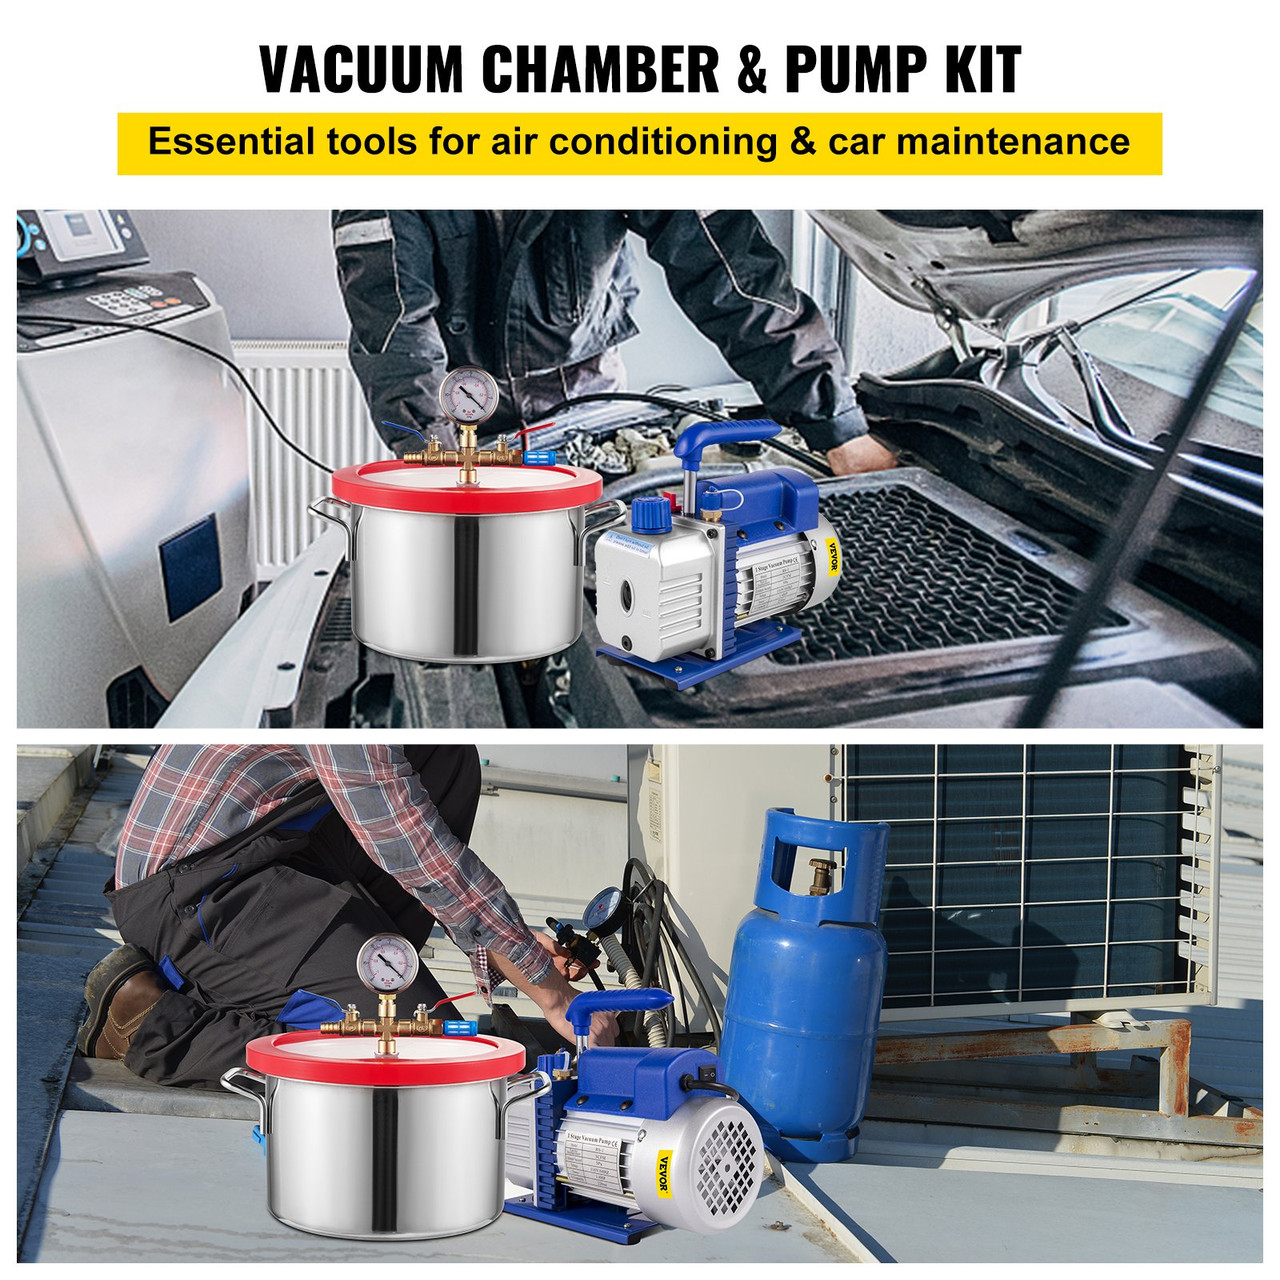 1 Gallon Vacuum Degassing Chamber Stainless Steel Degassing Chamber 3.8L Vacuum Chamber Kit with 3 CFM Single Stage Vacuum Pump(3CFM Vacuum Pump + 1 Gallon Vacuum Chamber)